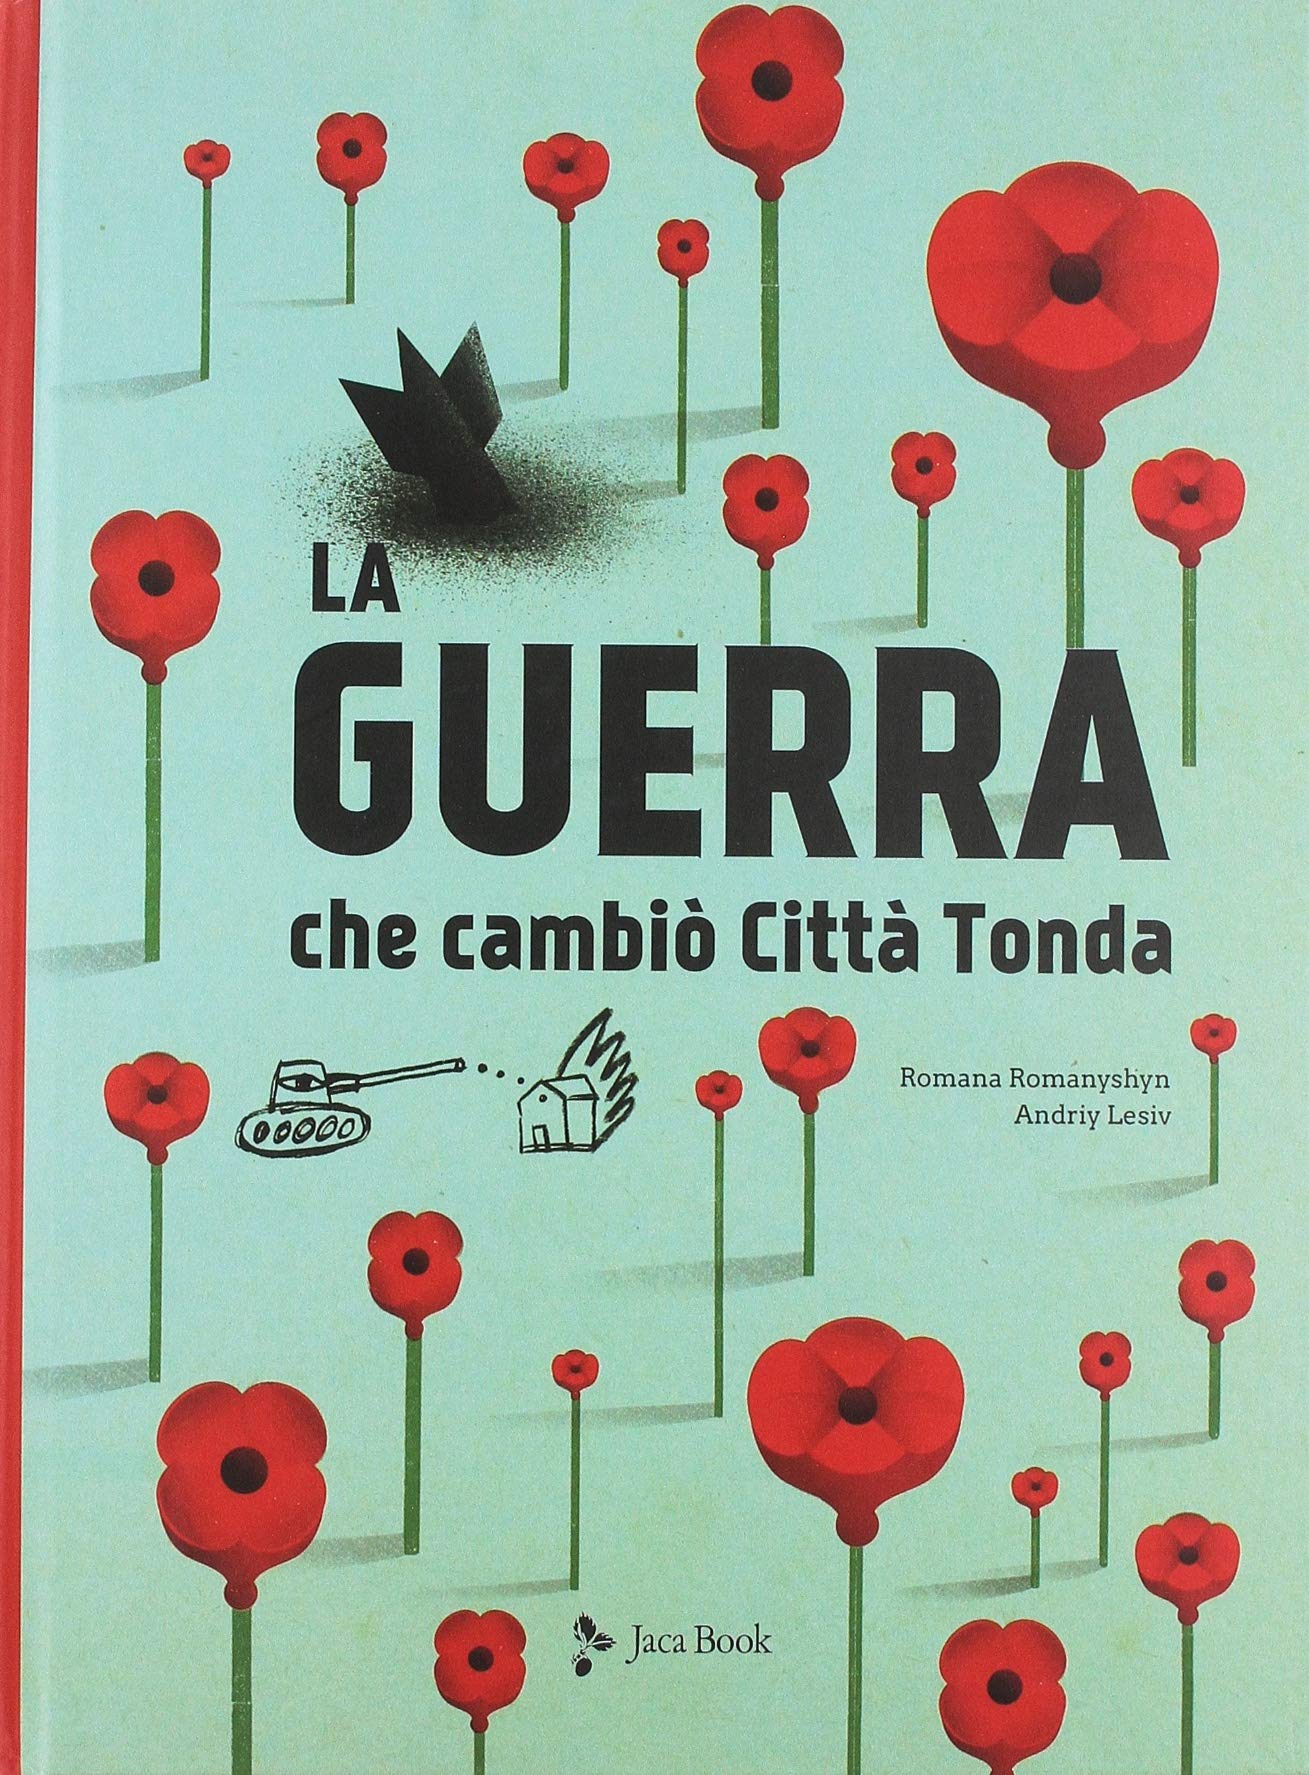 Romana Romanyshyn & Andriy Lesiv – La guerra che cambiò la Città Tonda (Jaca Book, Milano 2019)